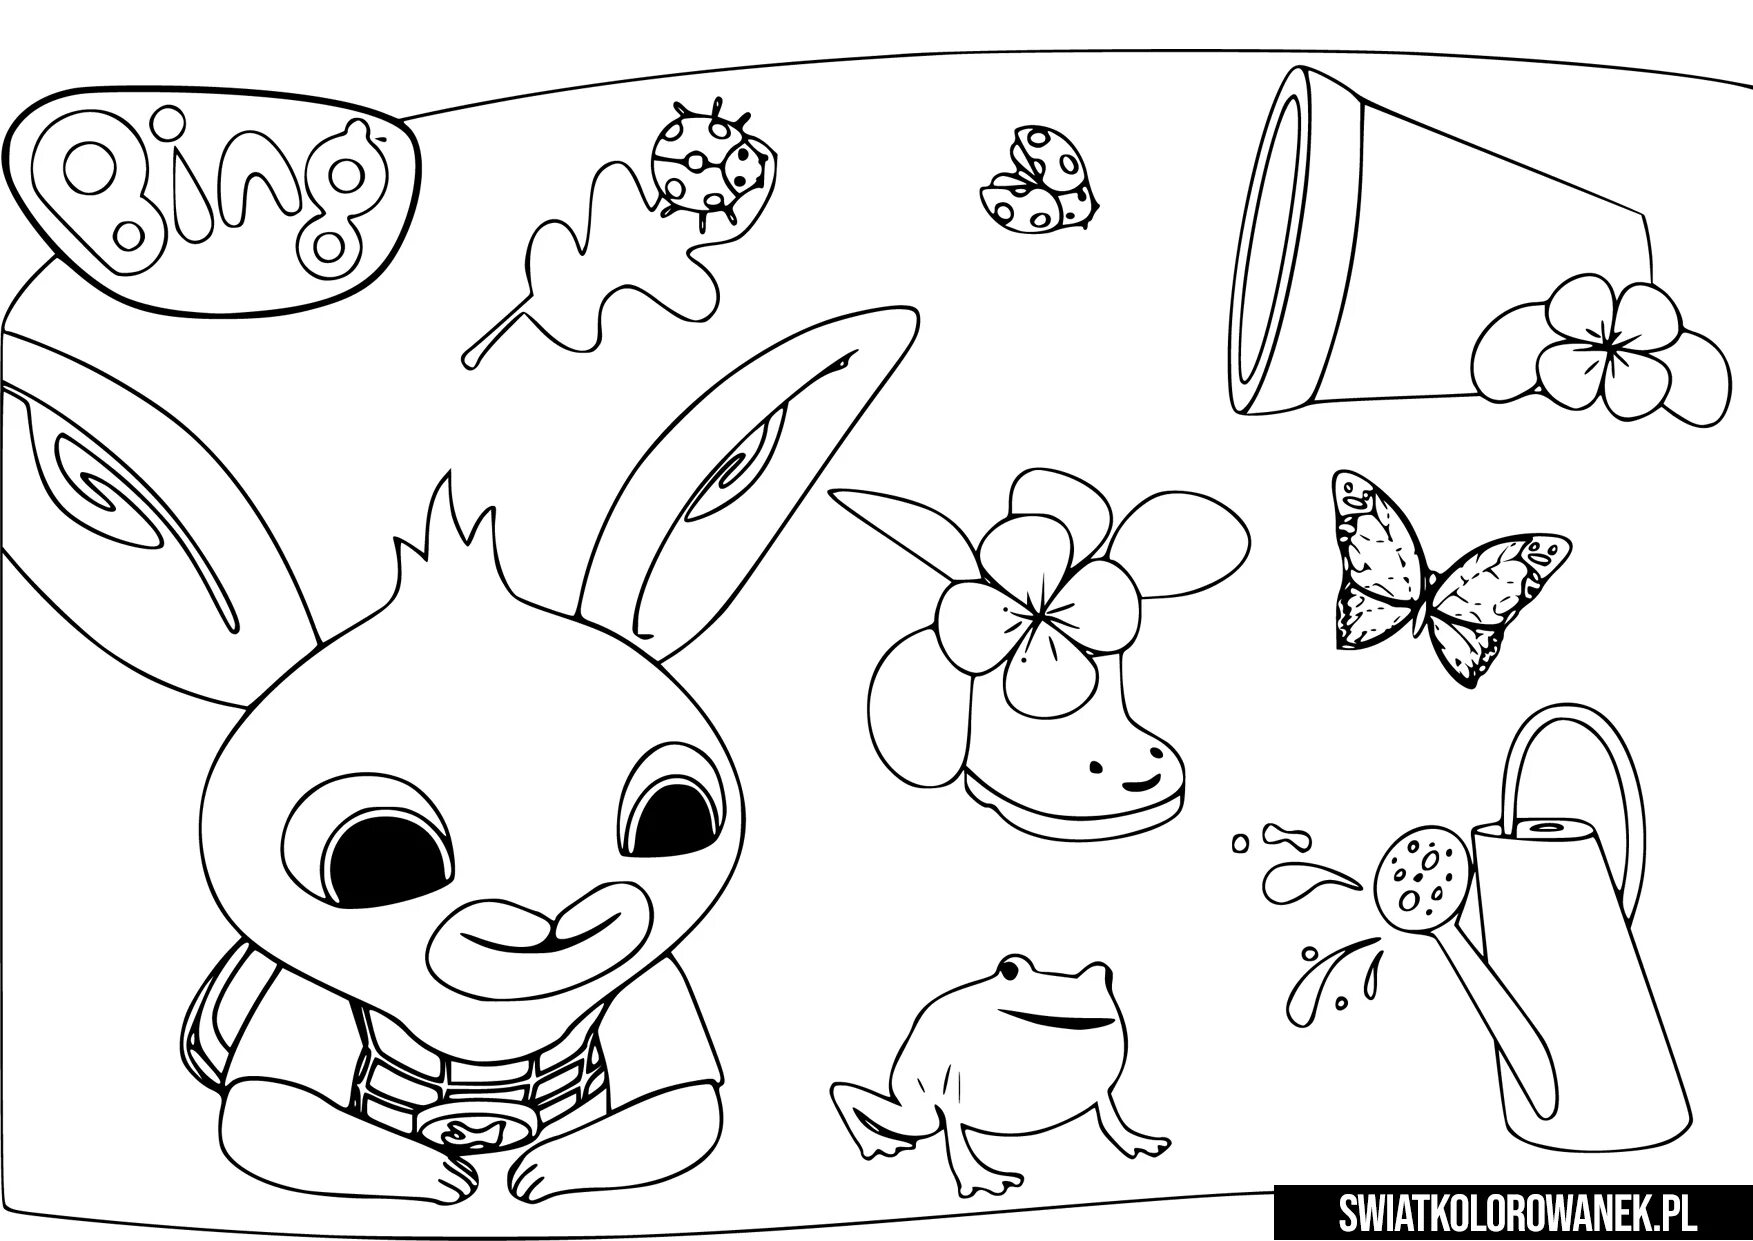 Bing рисовать. Бинг раскраска. Раскраска кролик бинг. Бинг раскраска для детей. Бинг картинки для раскраски.